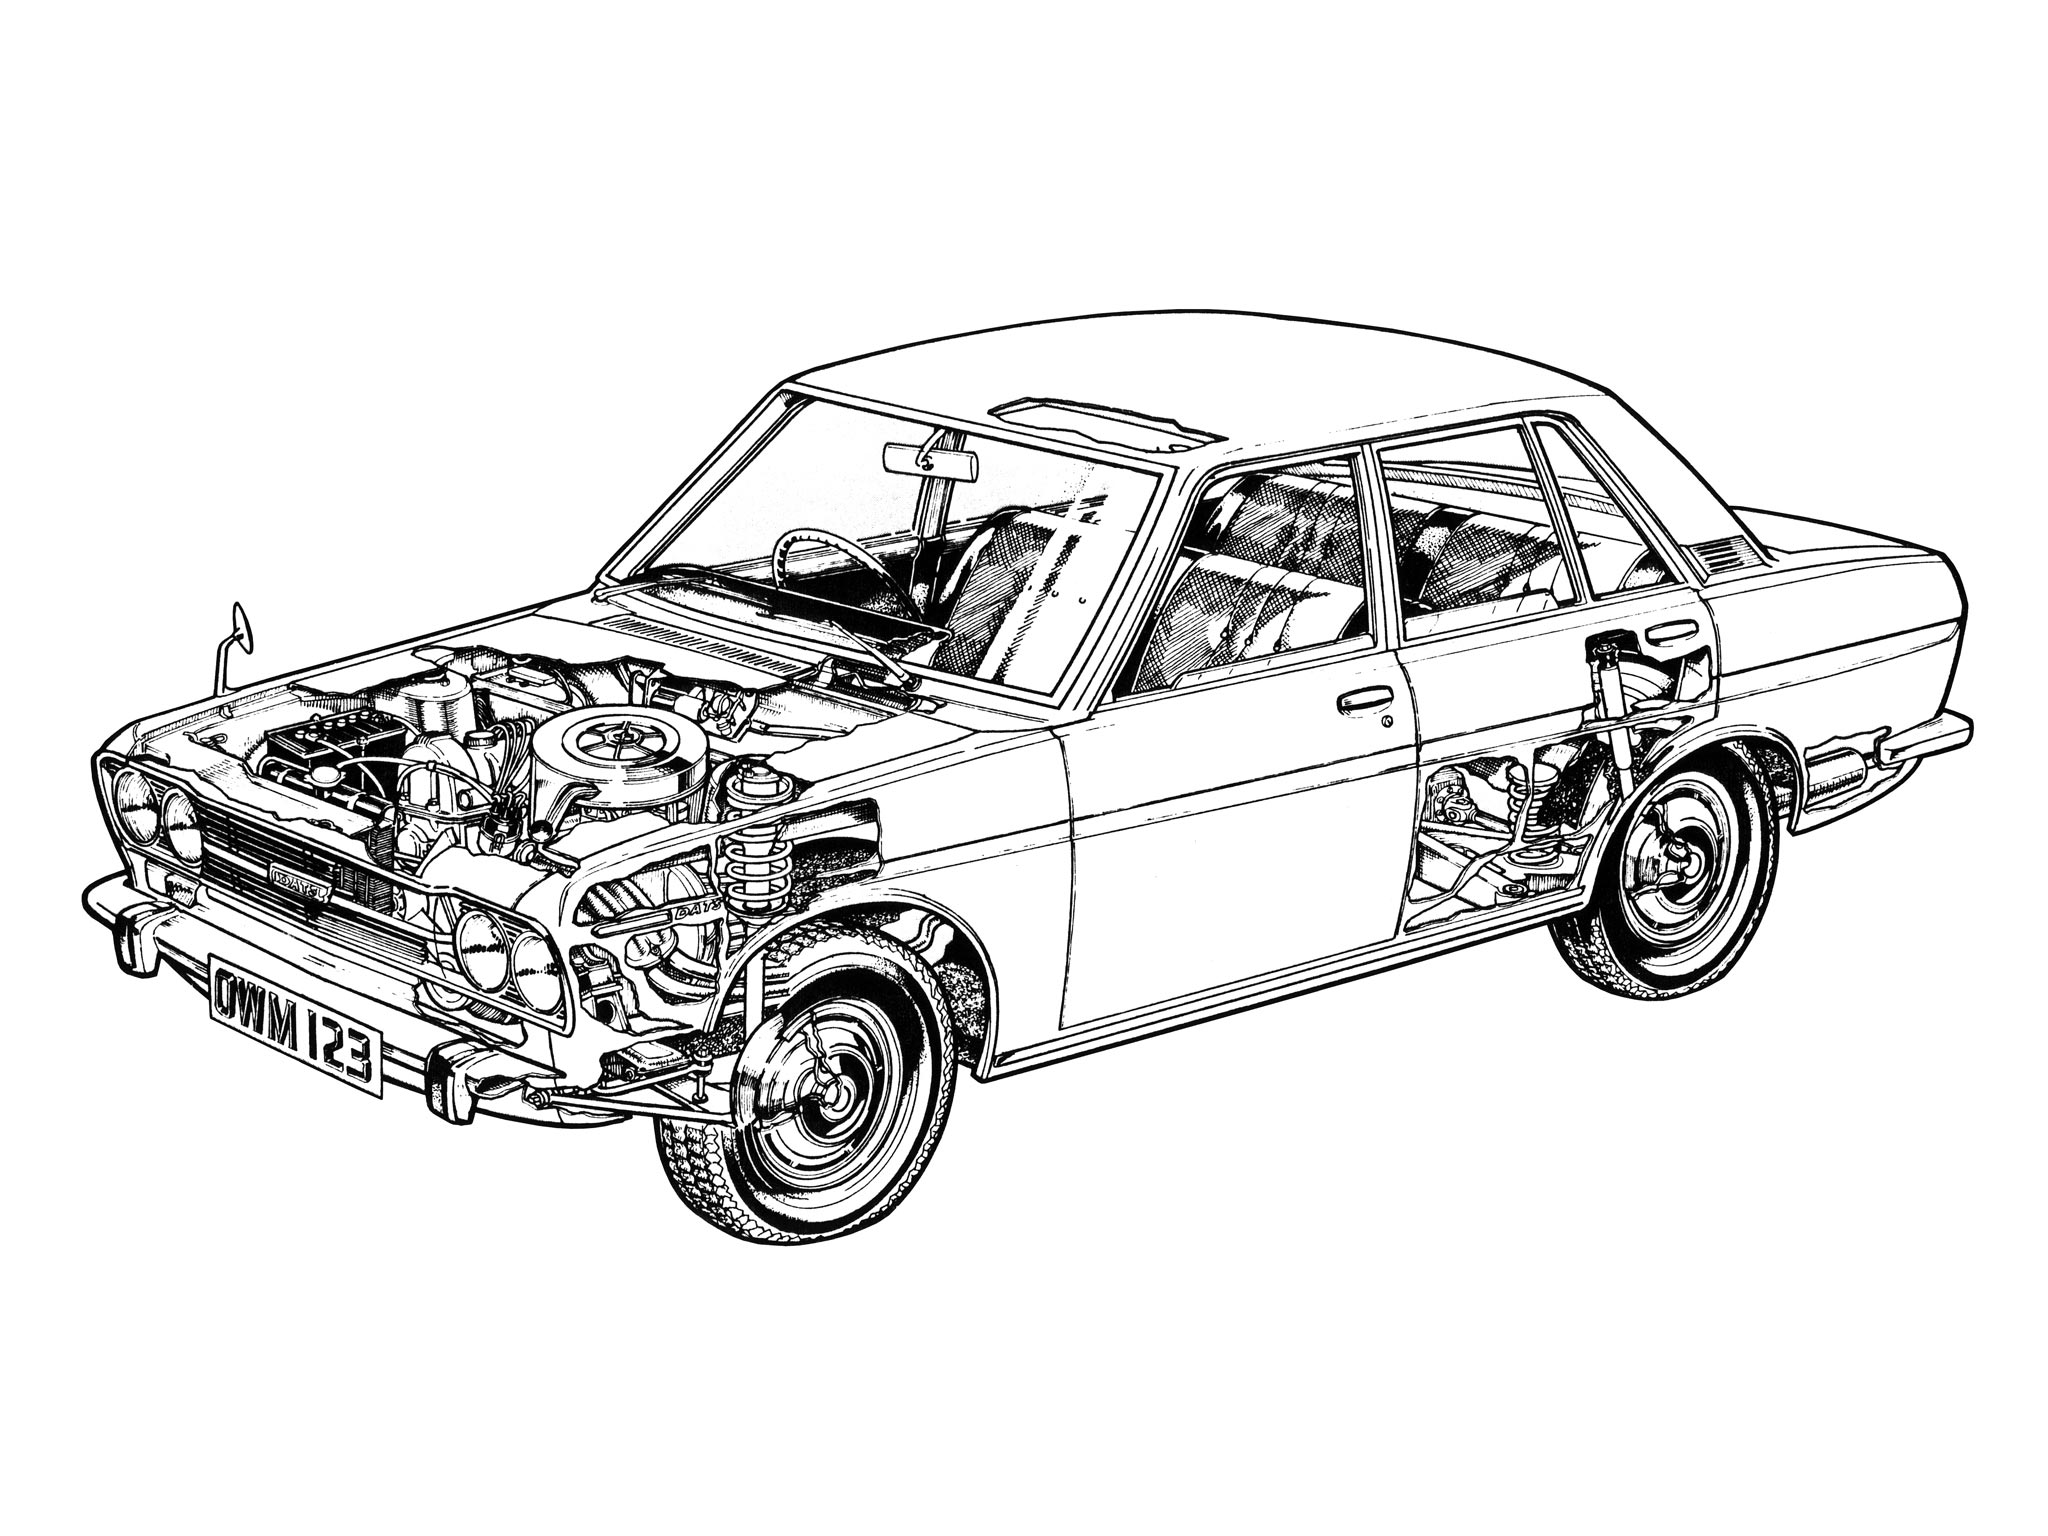 Datsun 510 cutaway drawing